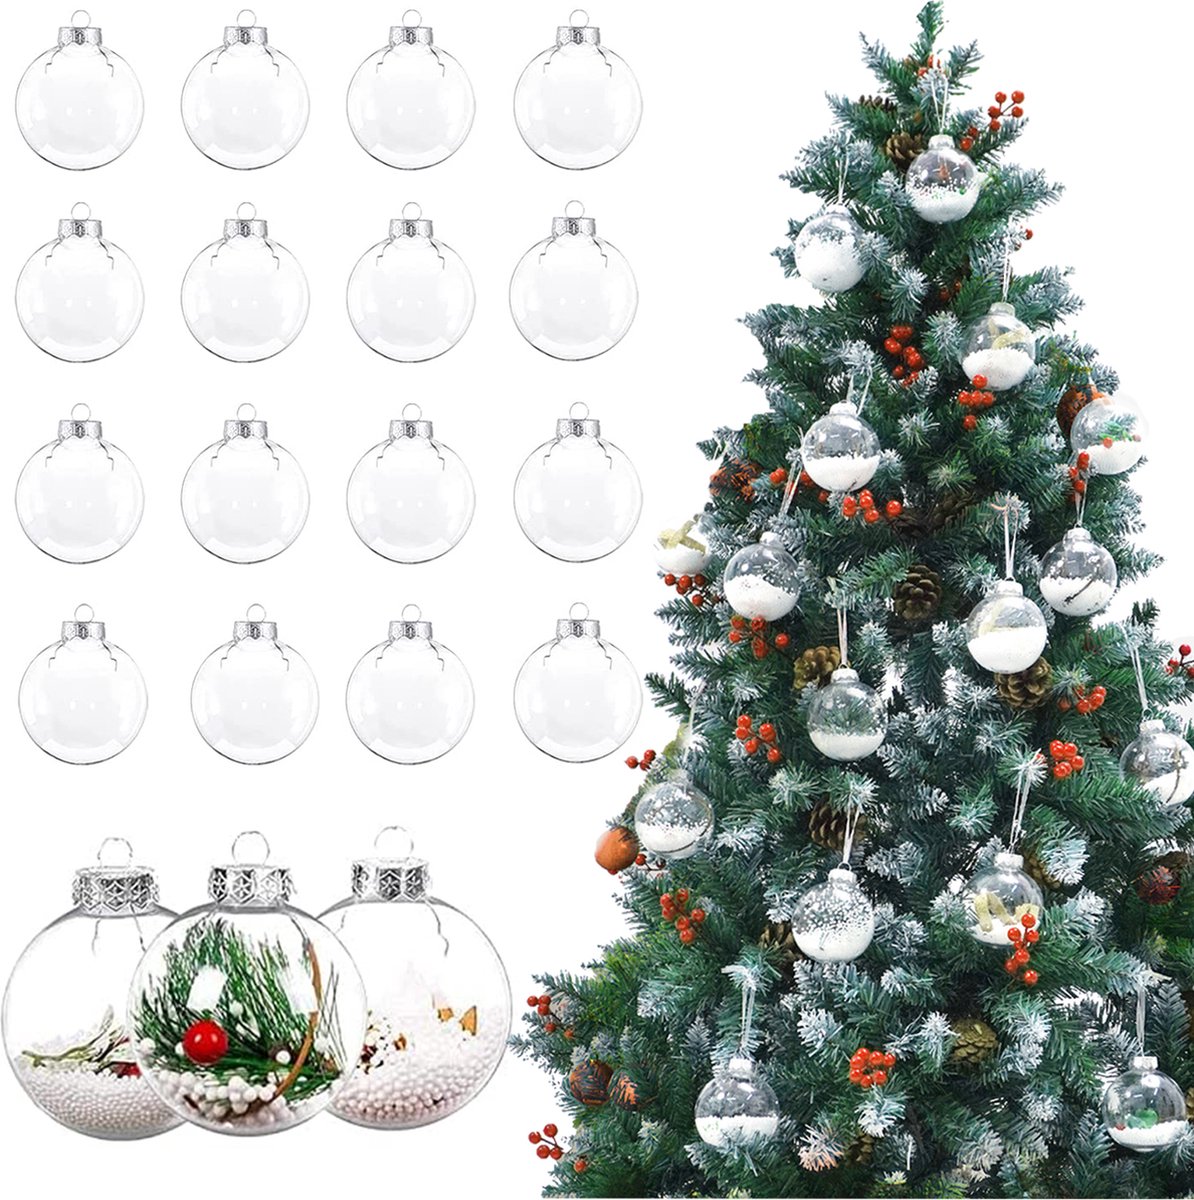 Uten - Kerstballen Plastic - kerstboom versiering - Christmas Gifts - kerstballen set - 16 stuks - kerstboom ballen - Ø8cm - transparant(wit)